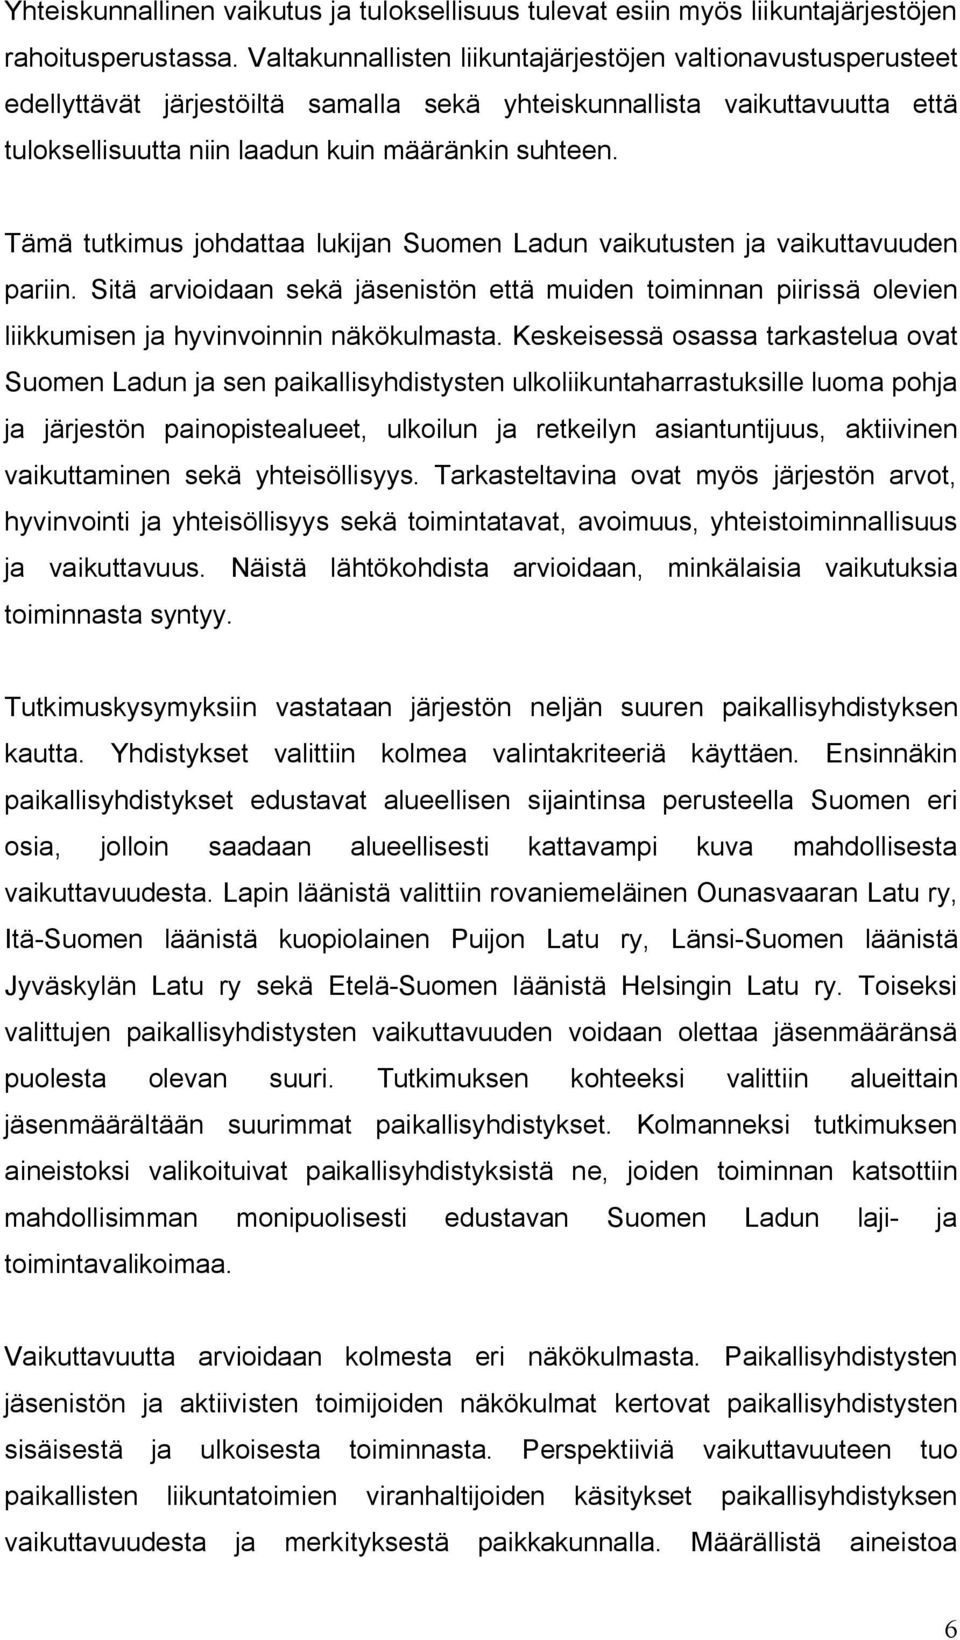 Tämä tutkimus johdattaa lukijan Suomen Ladun vaikutusten ja vaikuttavuuden pariin. Sitä arvioidaan sekä jäsenistön että muiden toiminnan piirissä olevien liikkumisen ja hyvinvoinnin näkökulmasta.